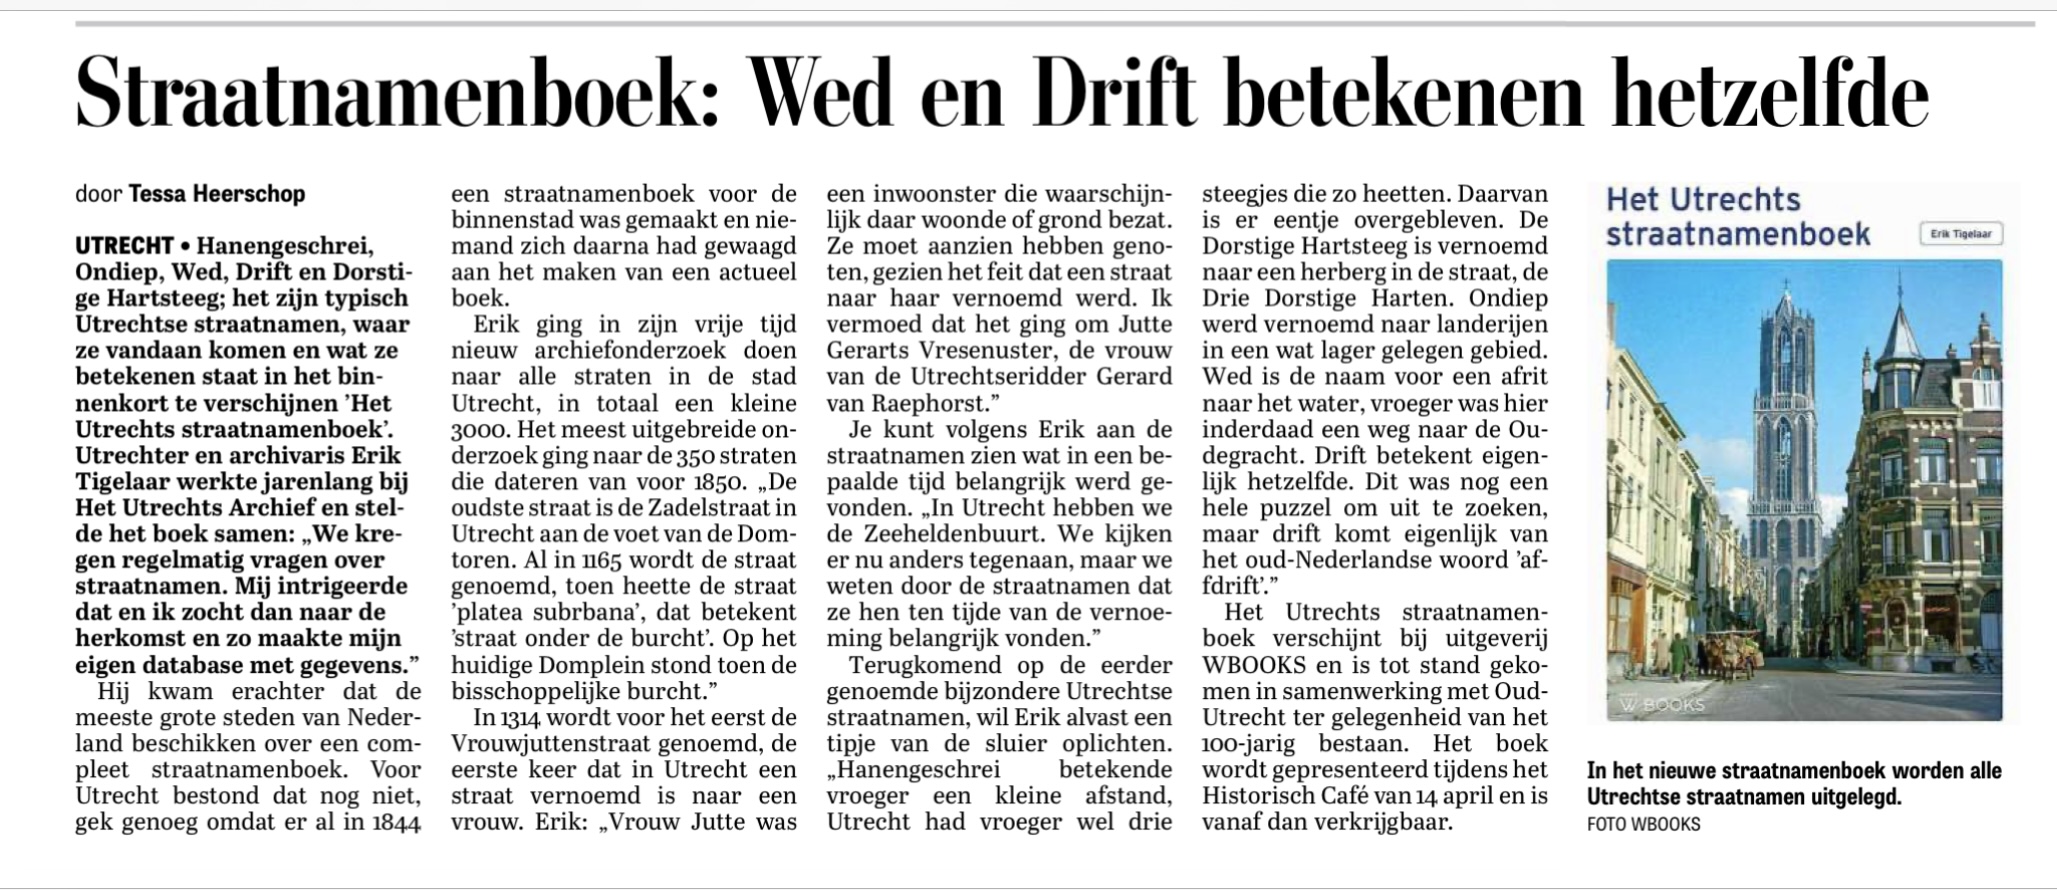 Telegraaf 30 maart 2023 over Het Utrechts Straatnamenboek